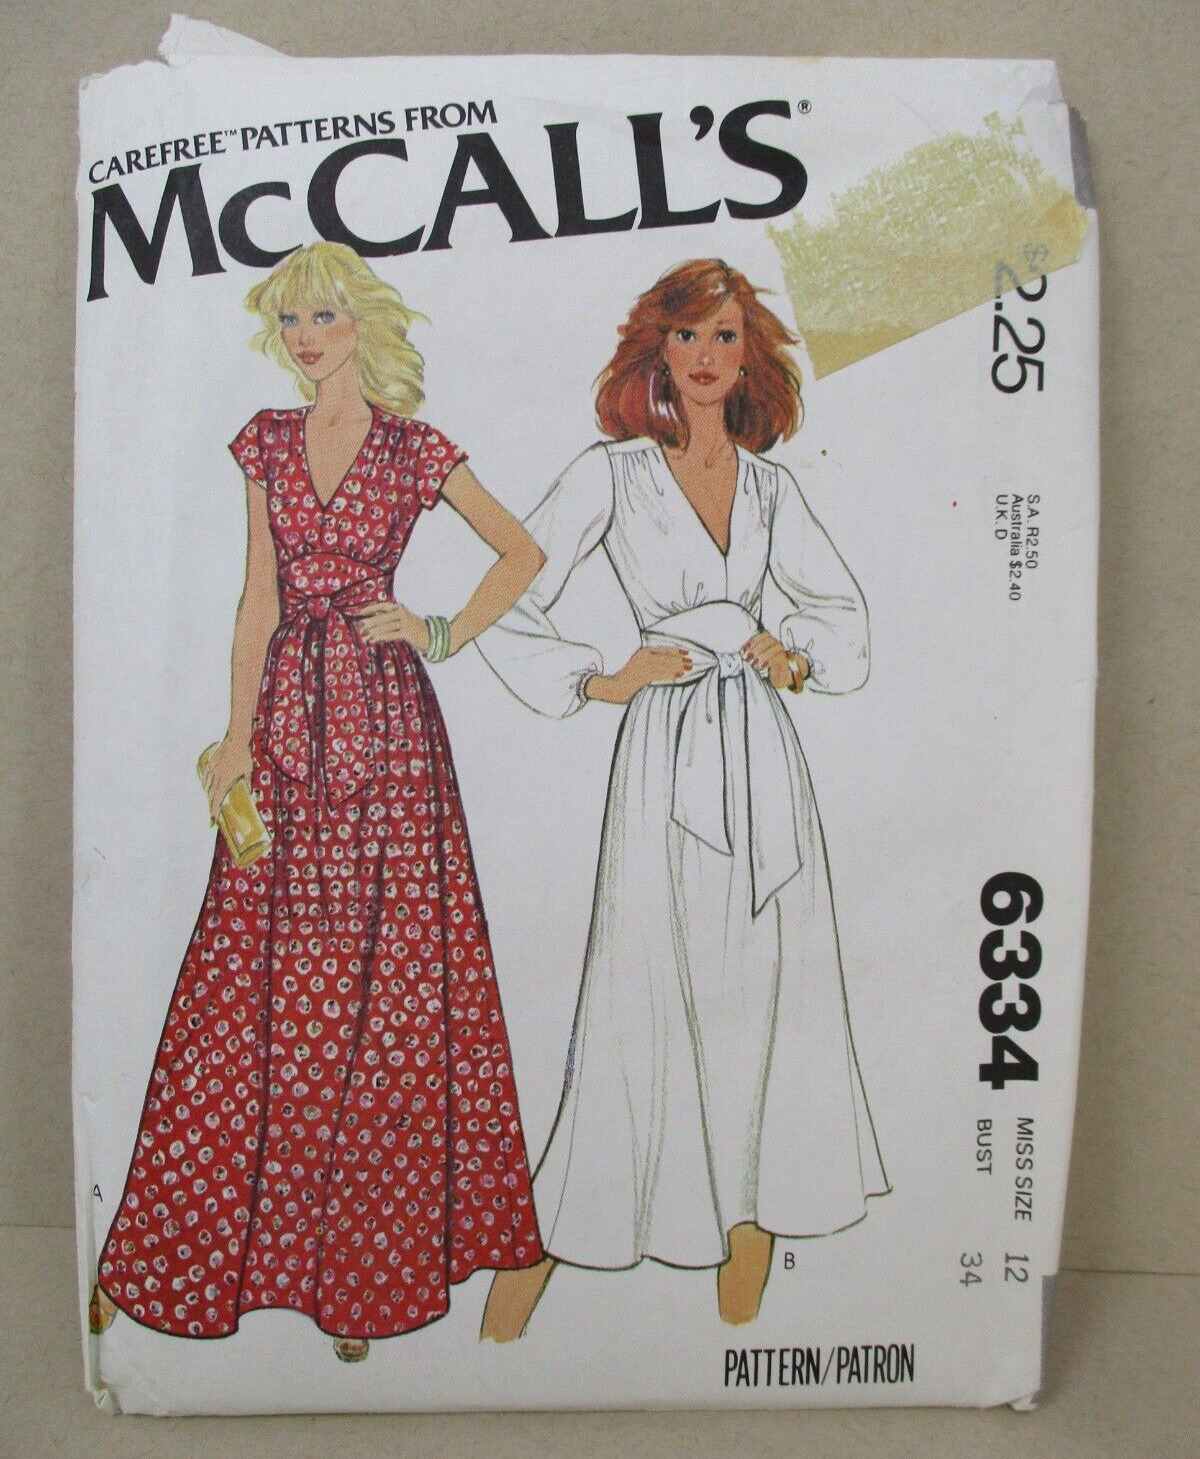 Vintage McCalls 6334 Sewing Pattern 1970s Maxi Tie Dress Misses 12 Bust 34 Uncut